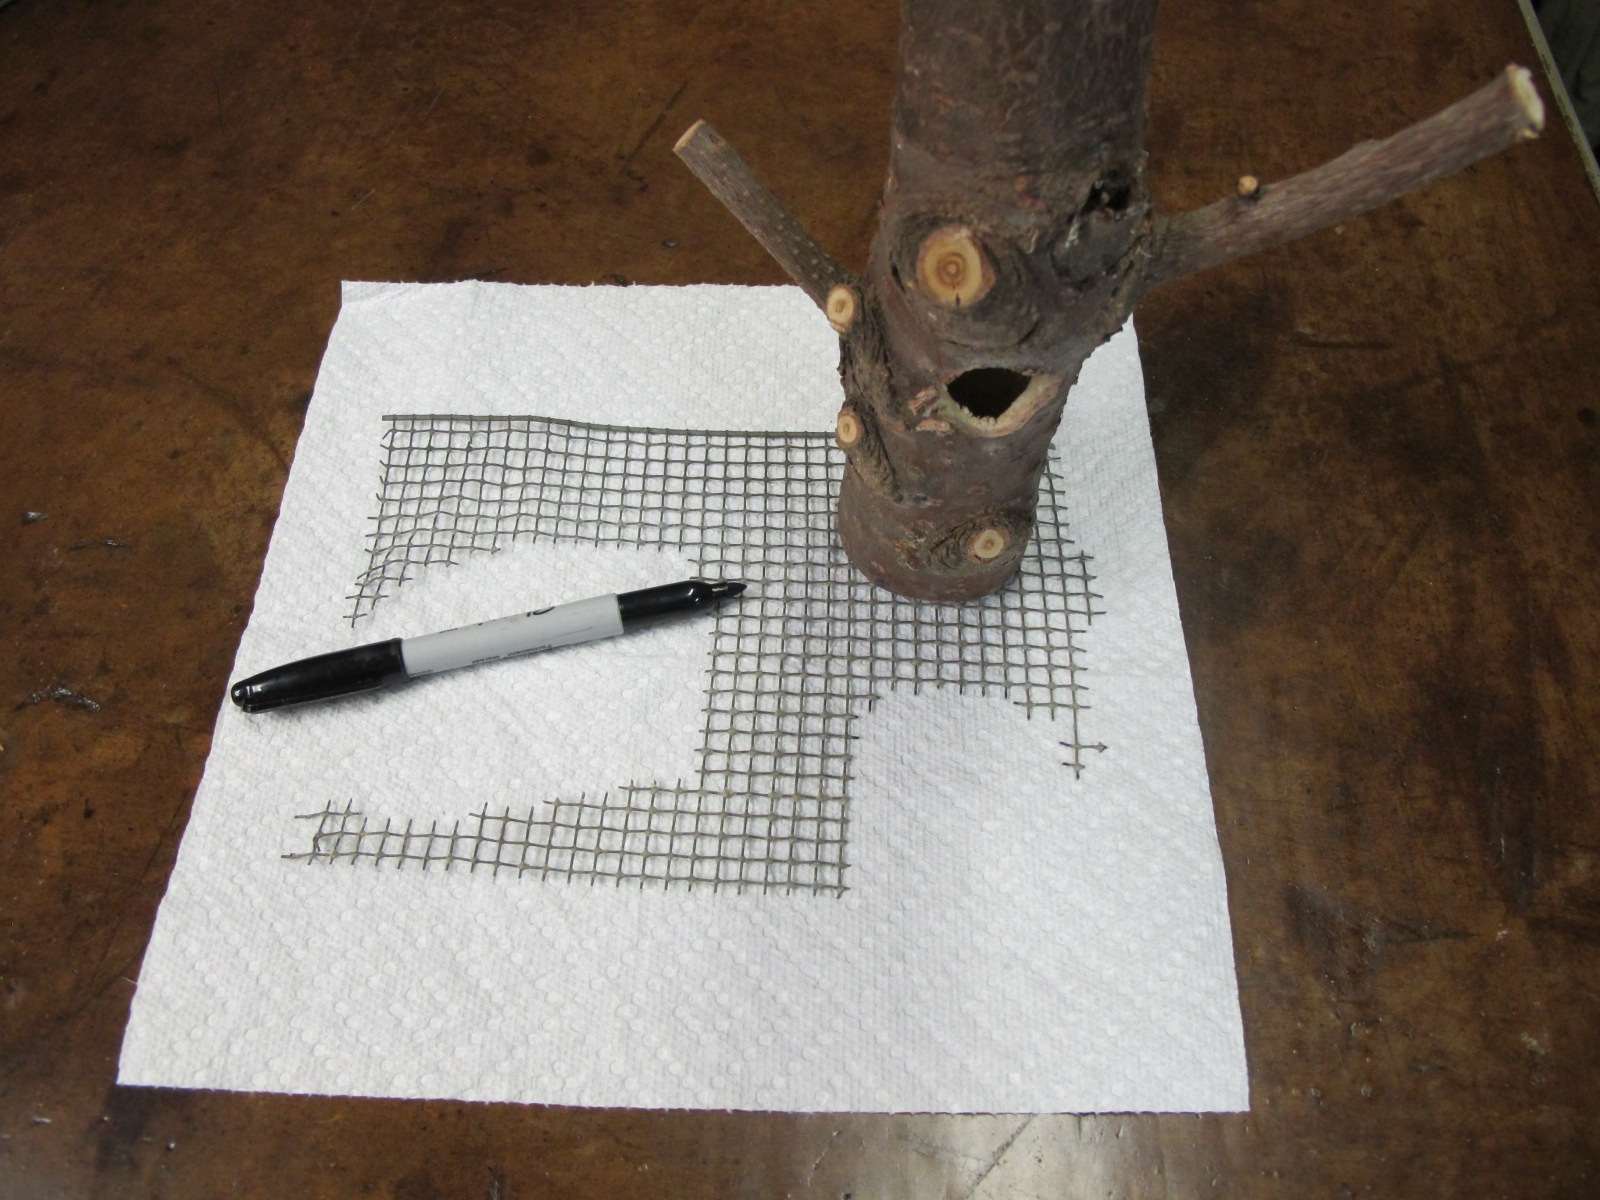  Sketch round pattern onto wire mesh&nbsp;with Sharpie pen using bottom of feeder . 